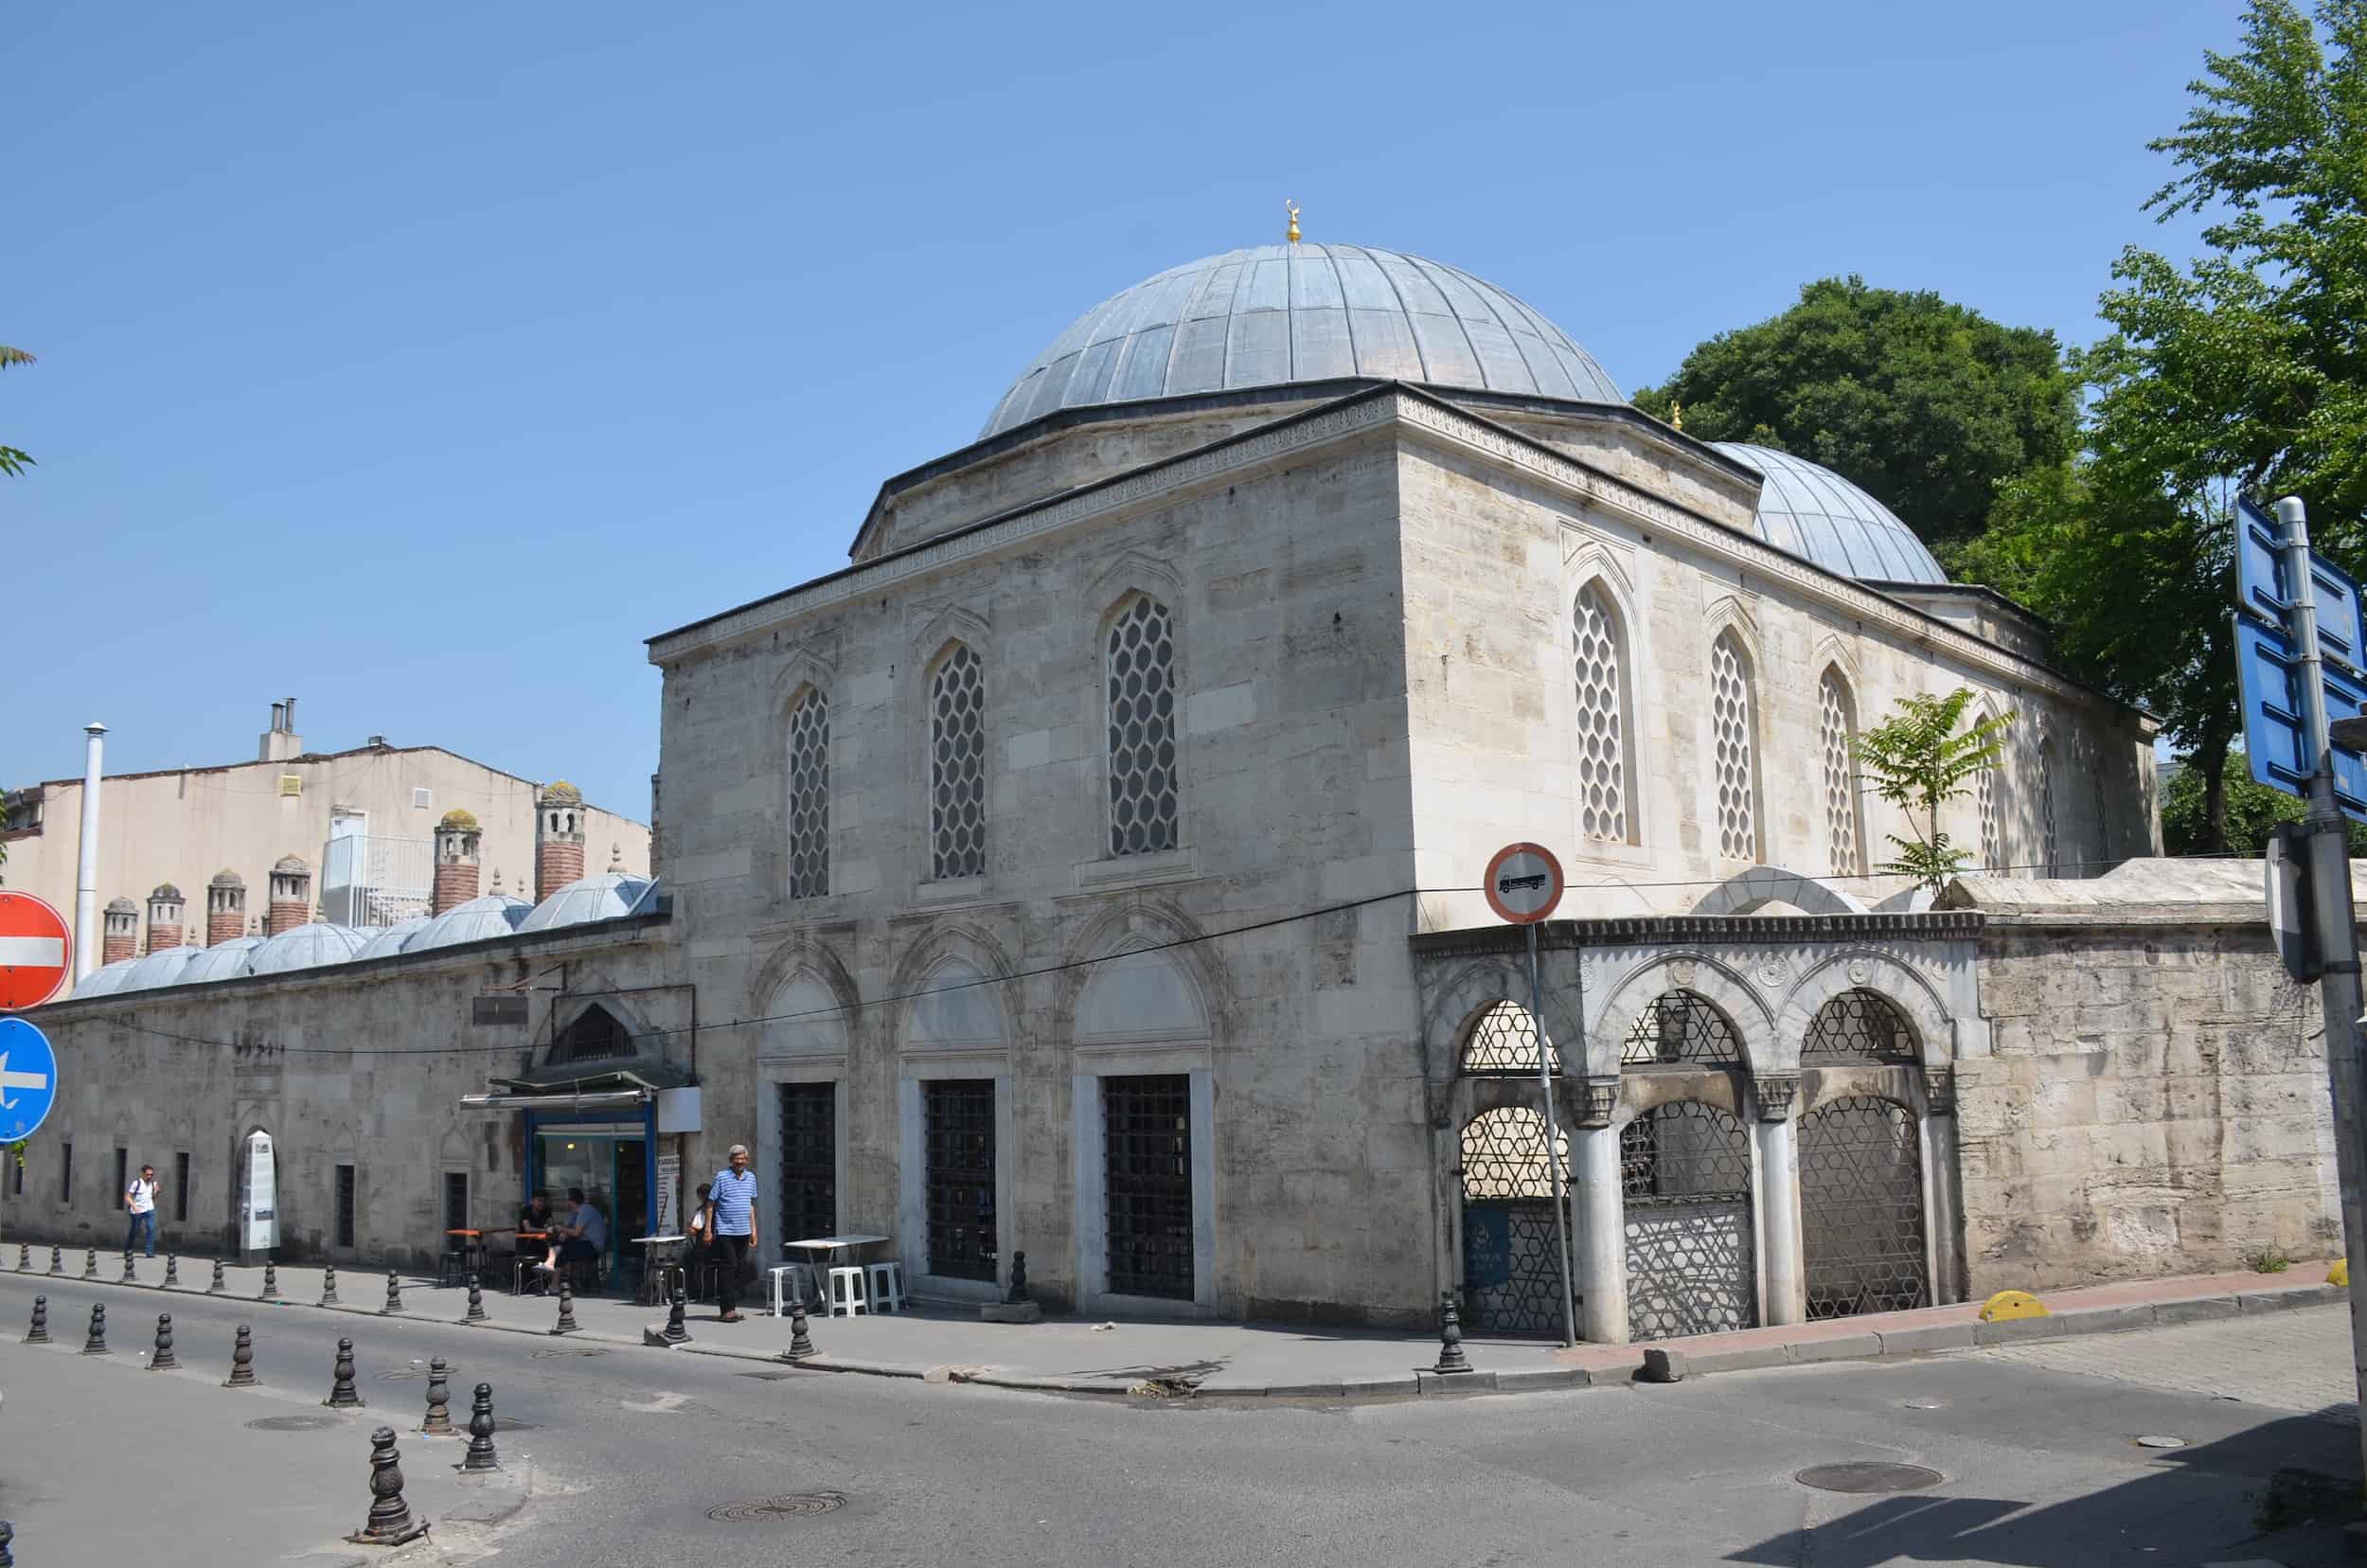 Ekmekçizade Ahmed Pasha Madrasa Madrasa in Vefa, Istanbul, Turkey